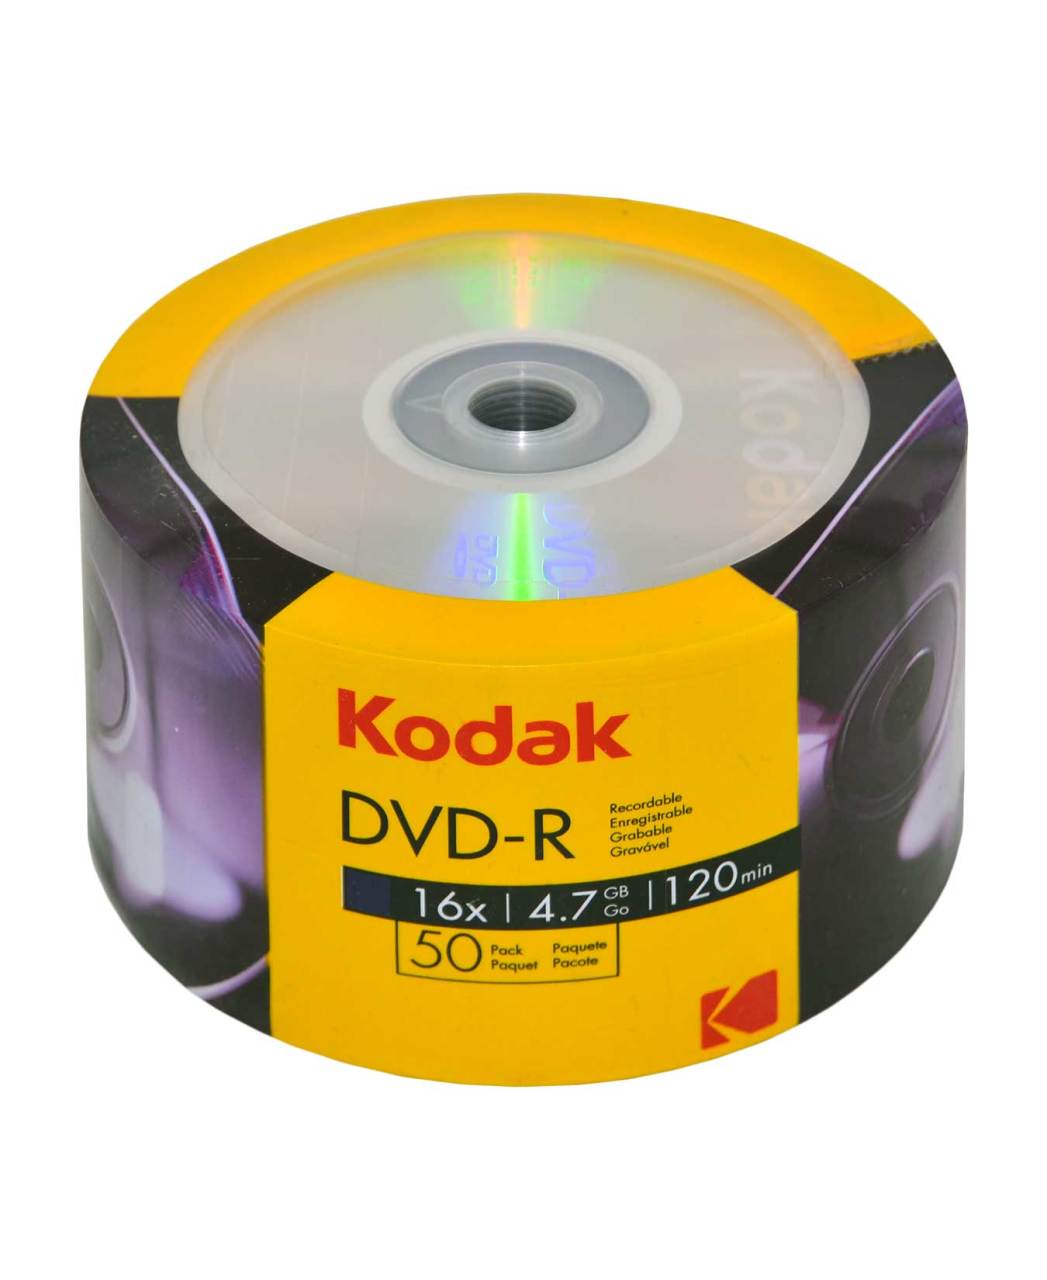 Kodak DVDR Yazılabilir Boş DVD 50'li Paket Fiyatı Ne Kadar